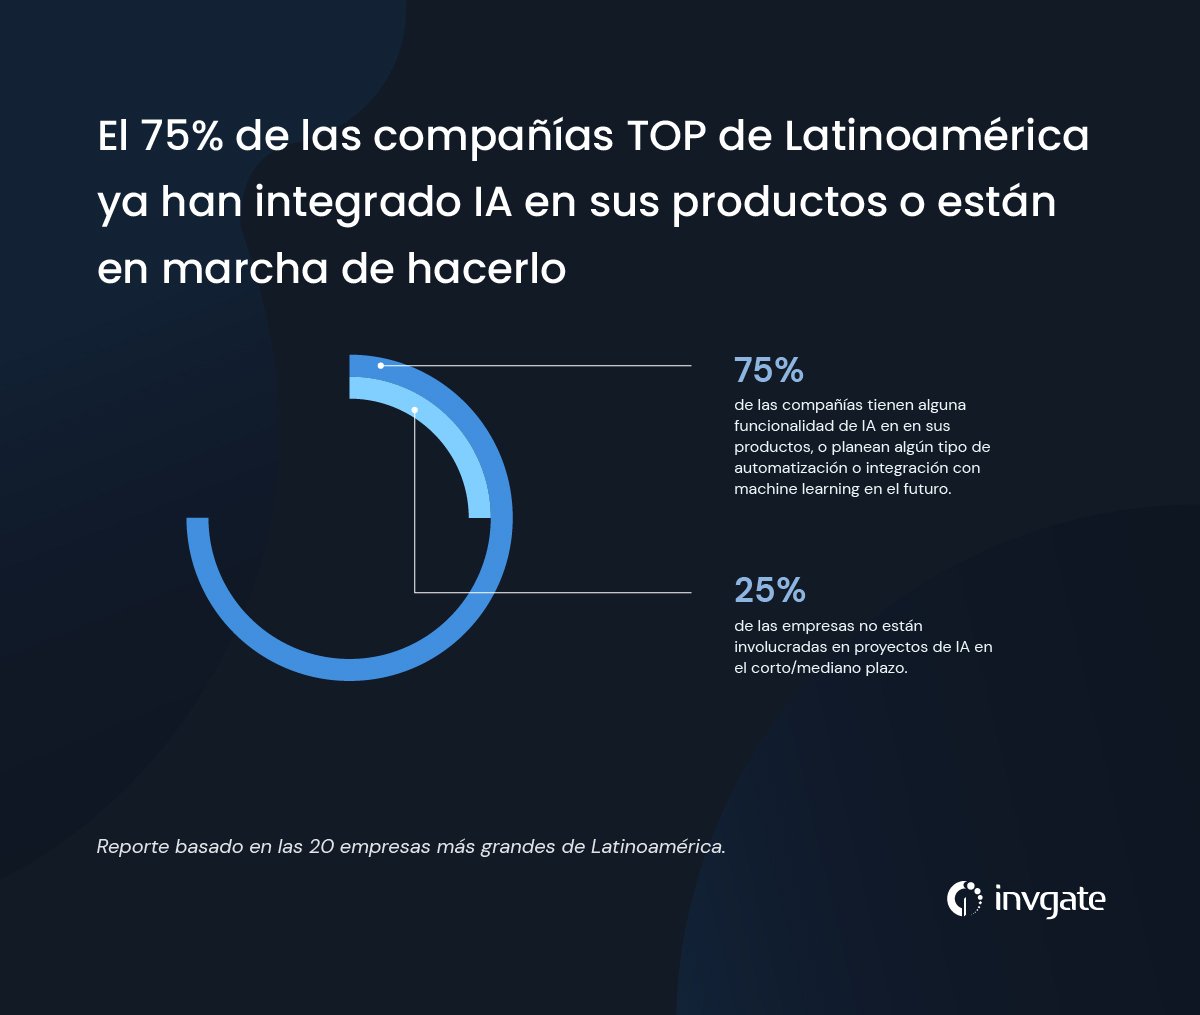 El 75% de las compañías top de Latinoamérica ya cuentan con integraciones con AI o están en vías de hacerlo.